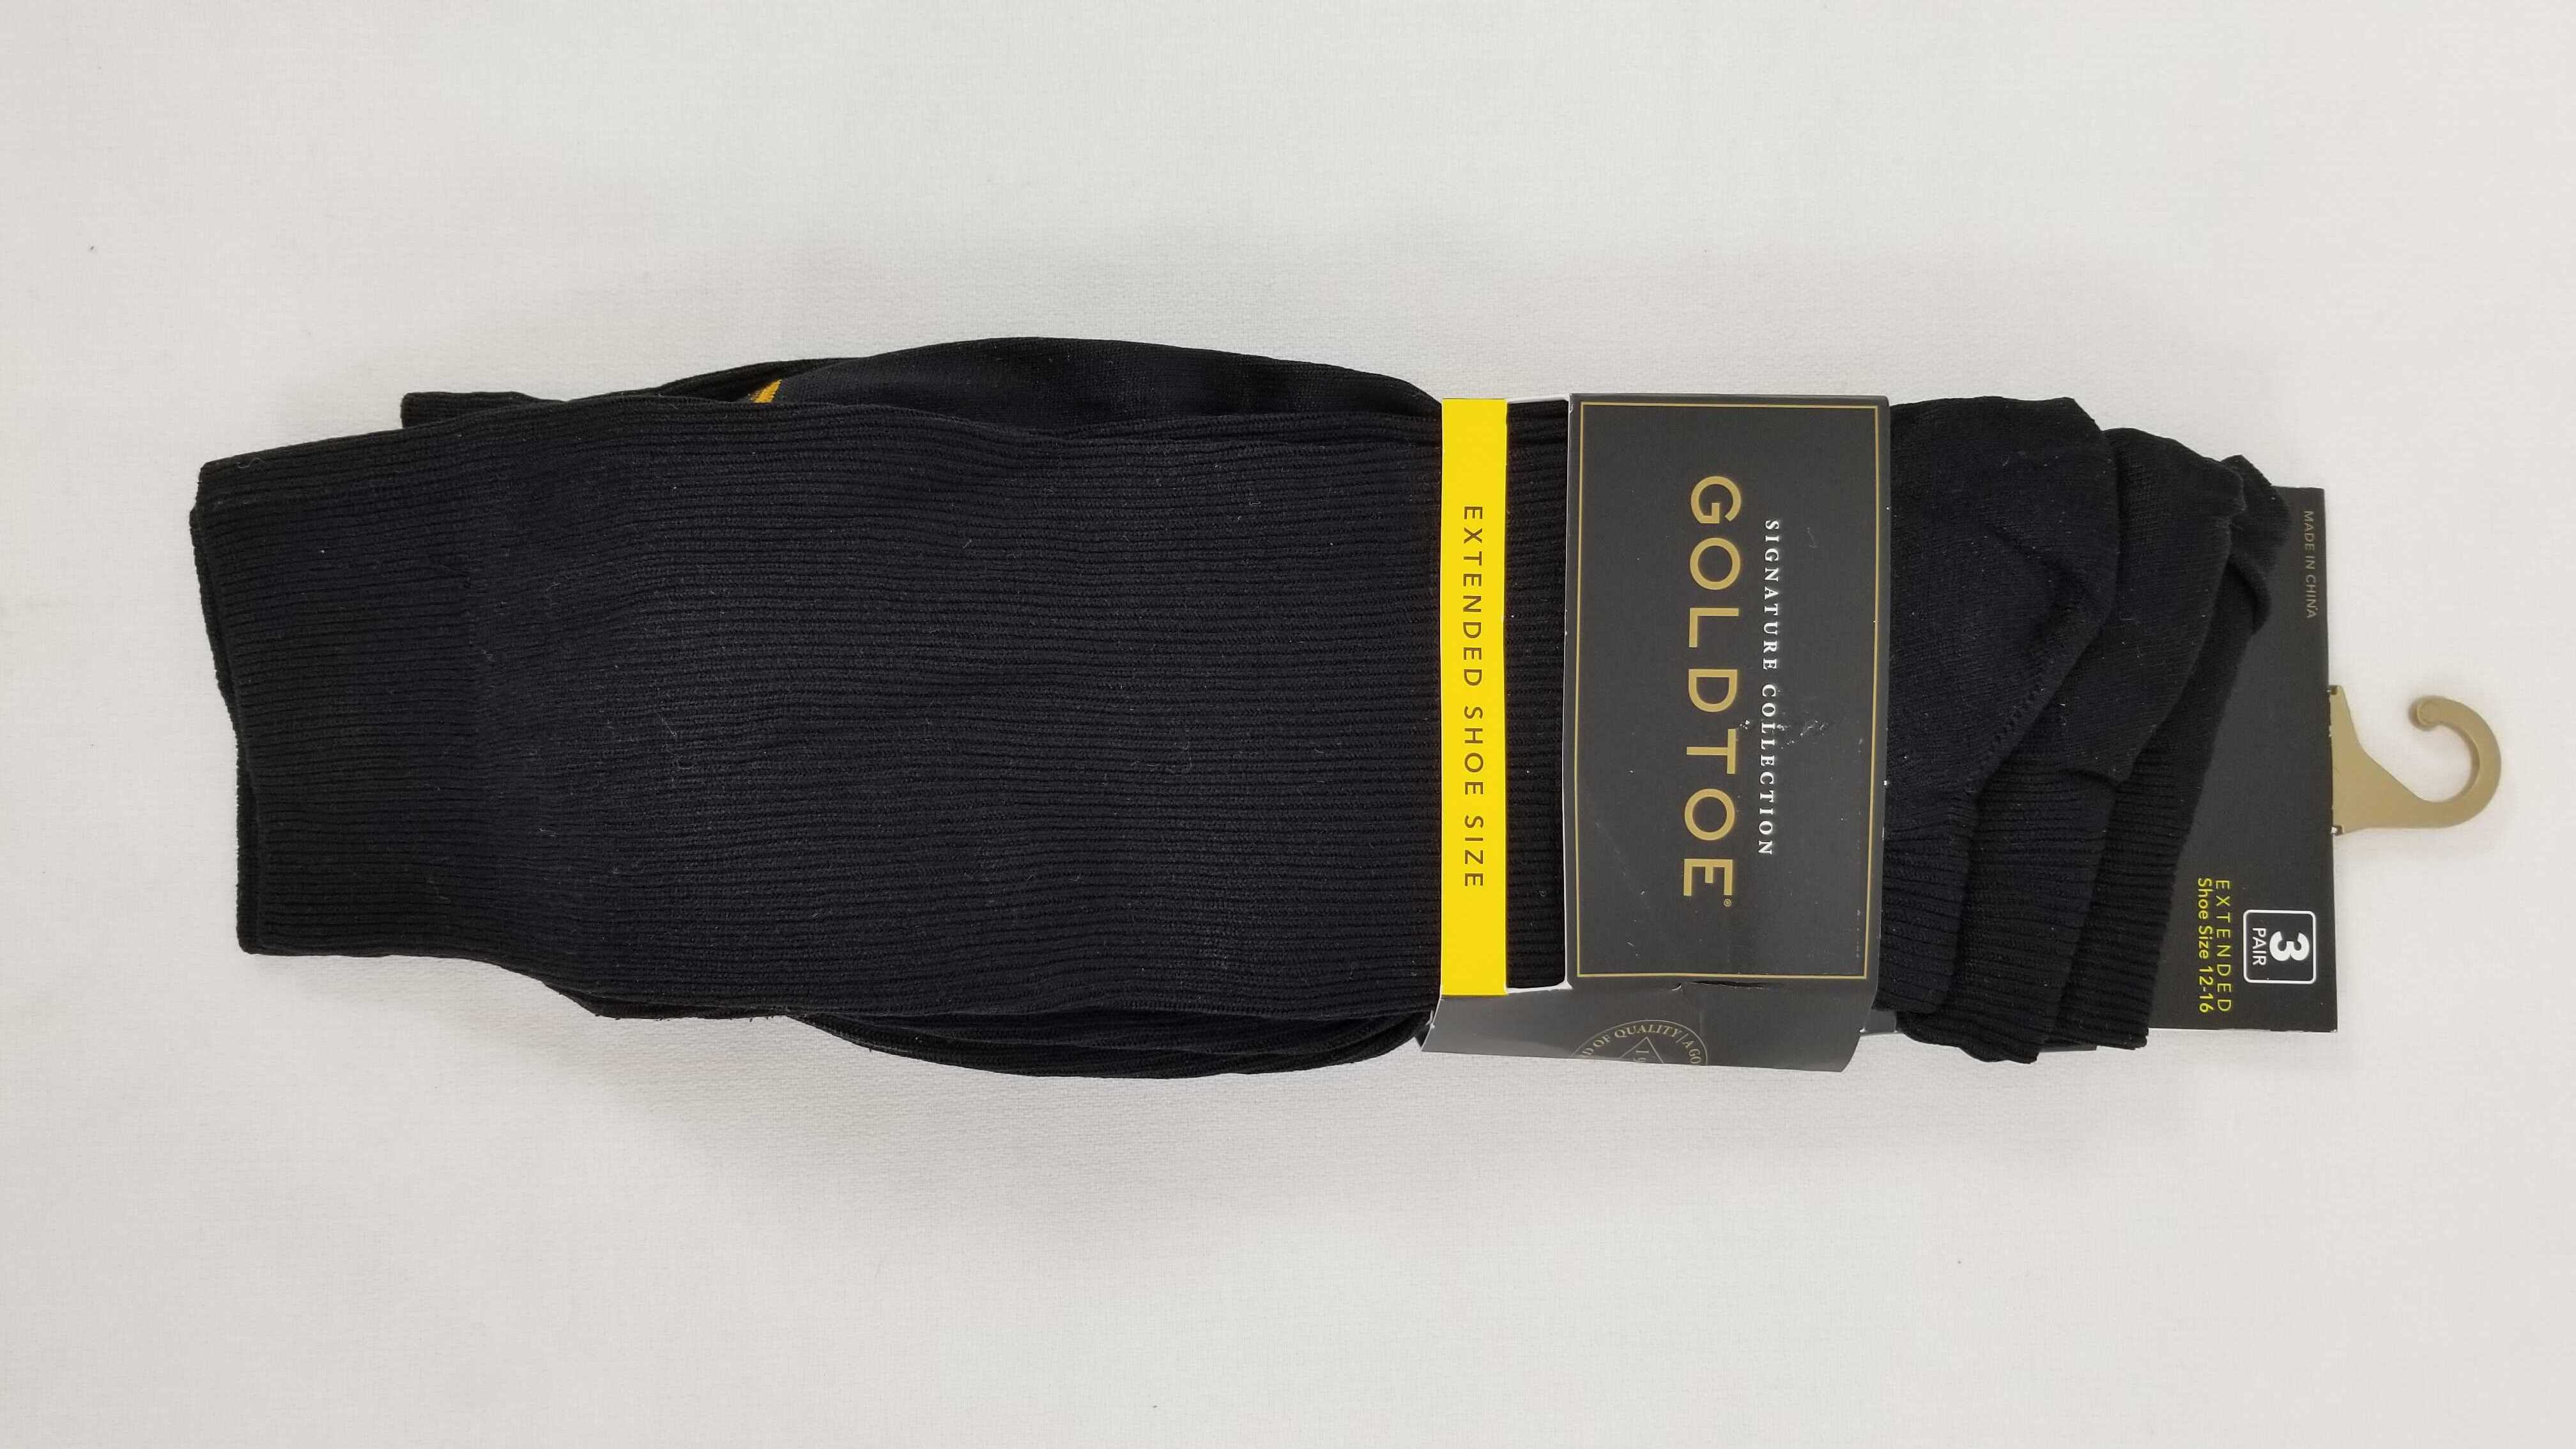 GOLDTOE Men’s Extended Shoe Size Crew Socks 3pk – 12-16 883096555308 | eBay